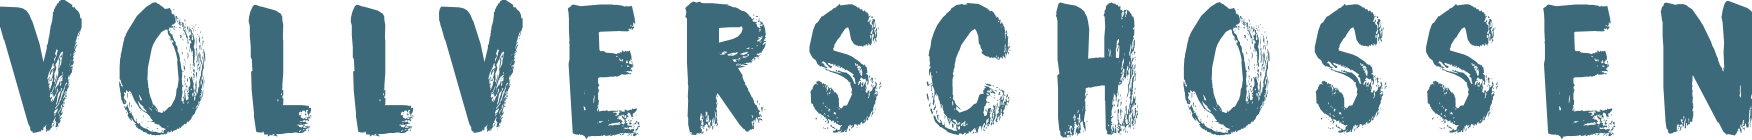 Vollverschossen Logo